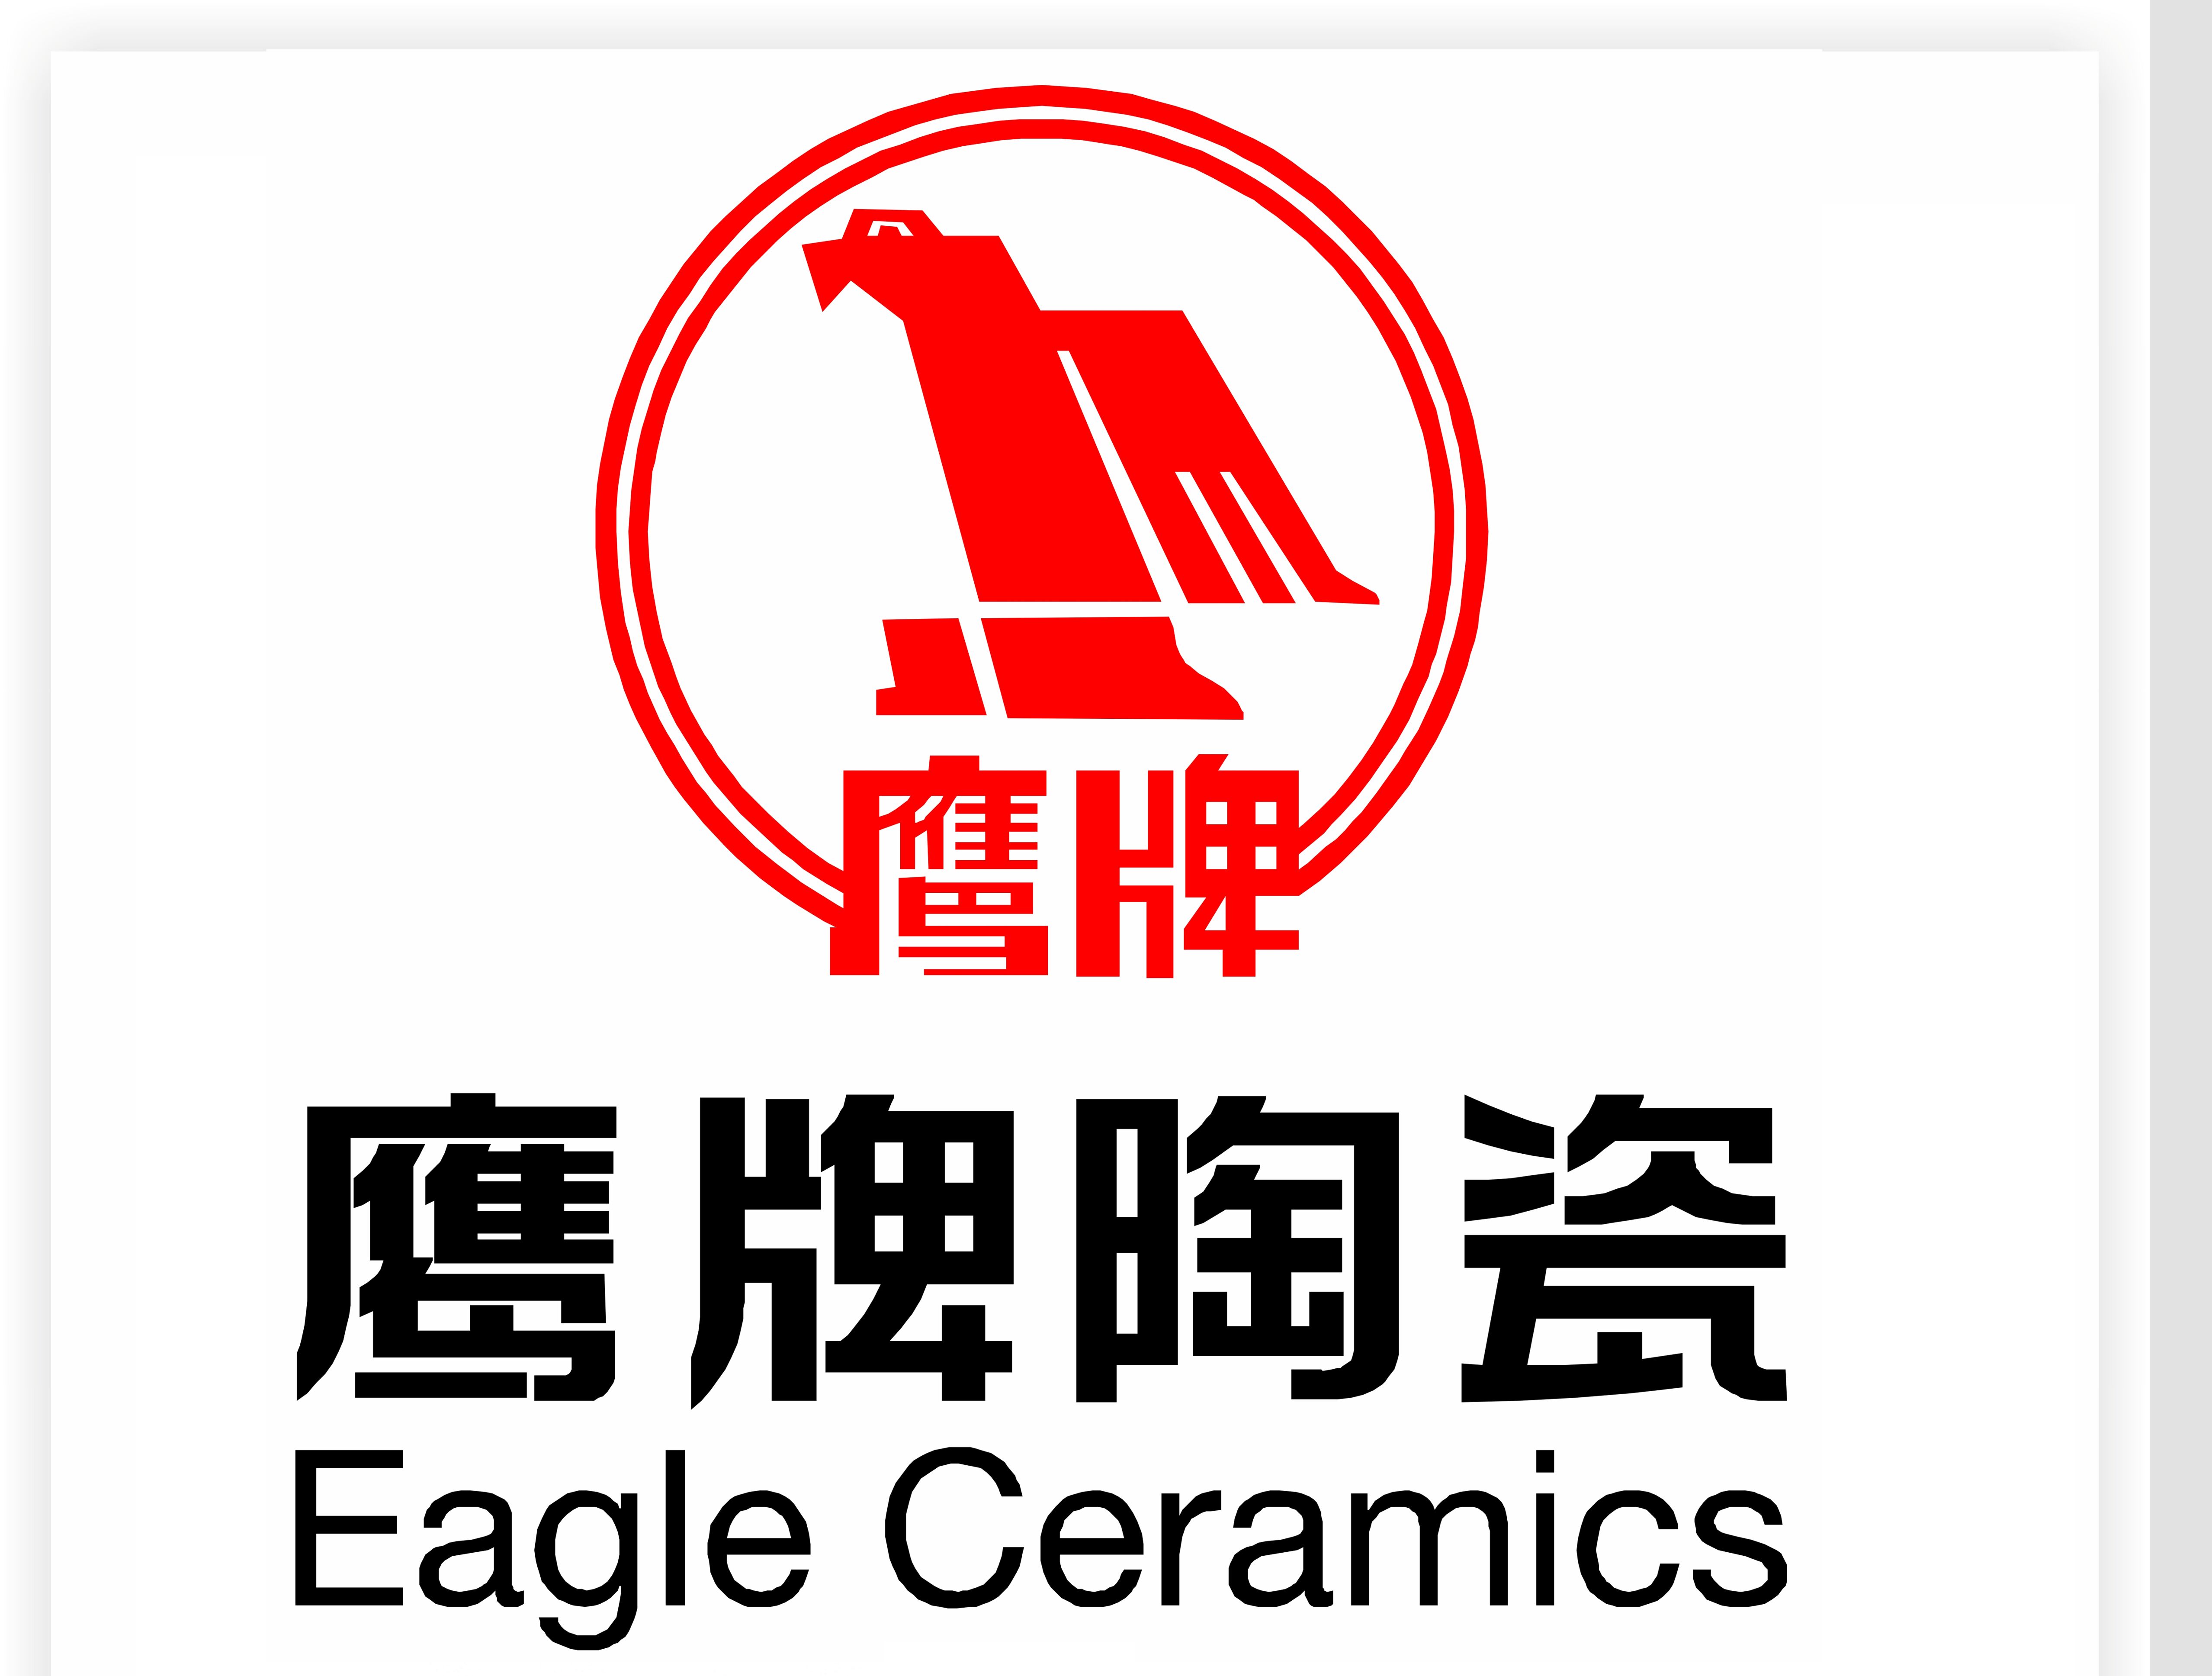 鹰牌瓷砖 logo图片